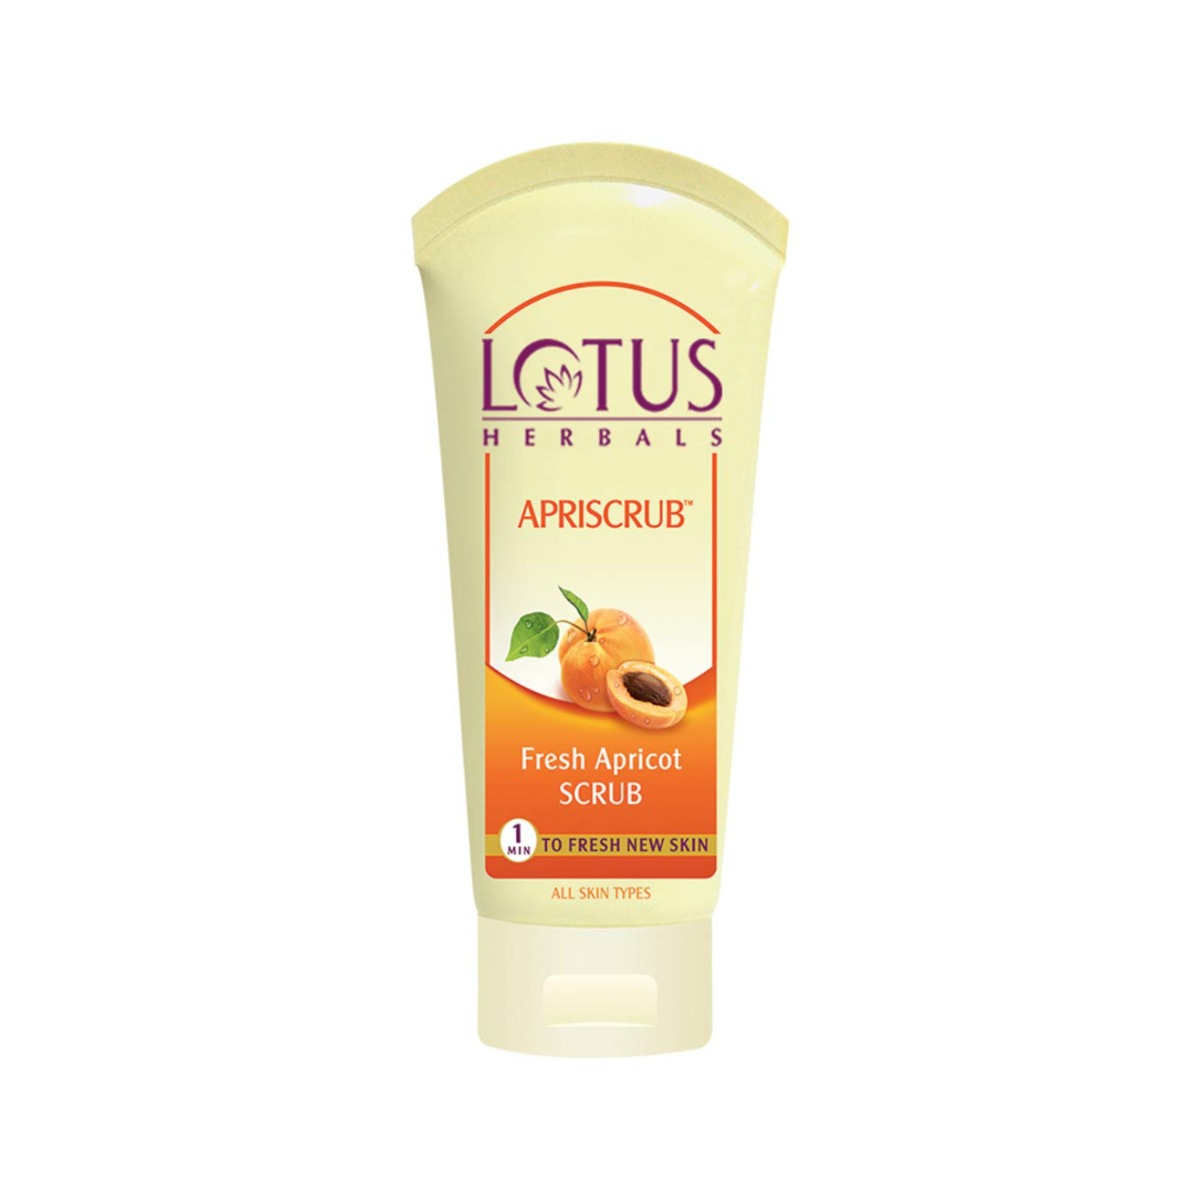 Lotus Herbals Apriscrub Fresh Apricot Scrub, 180gm